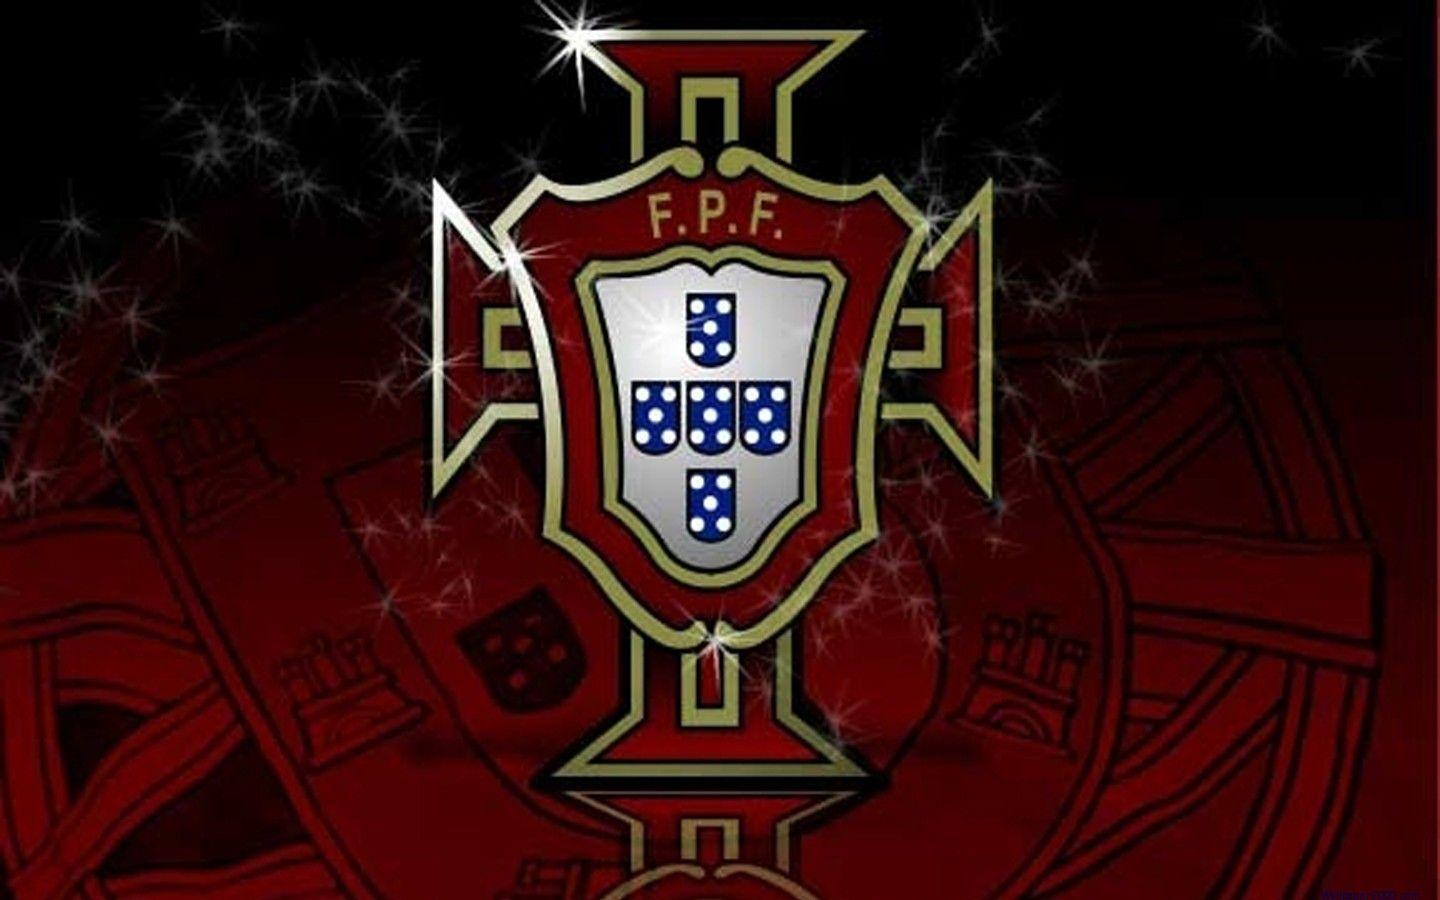 UEFA Euro 2016 Portugal